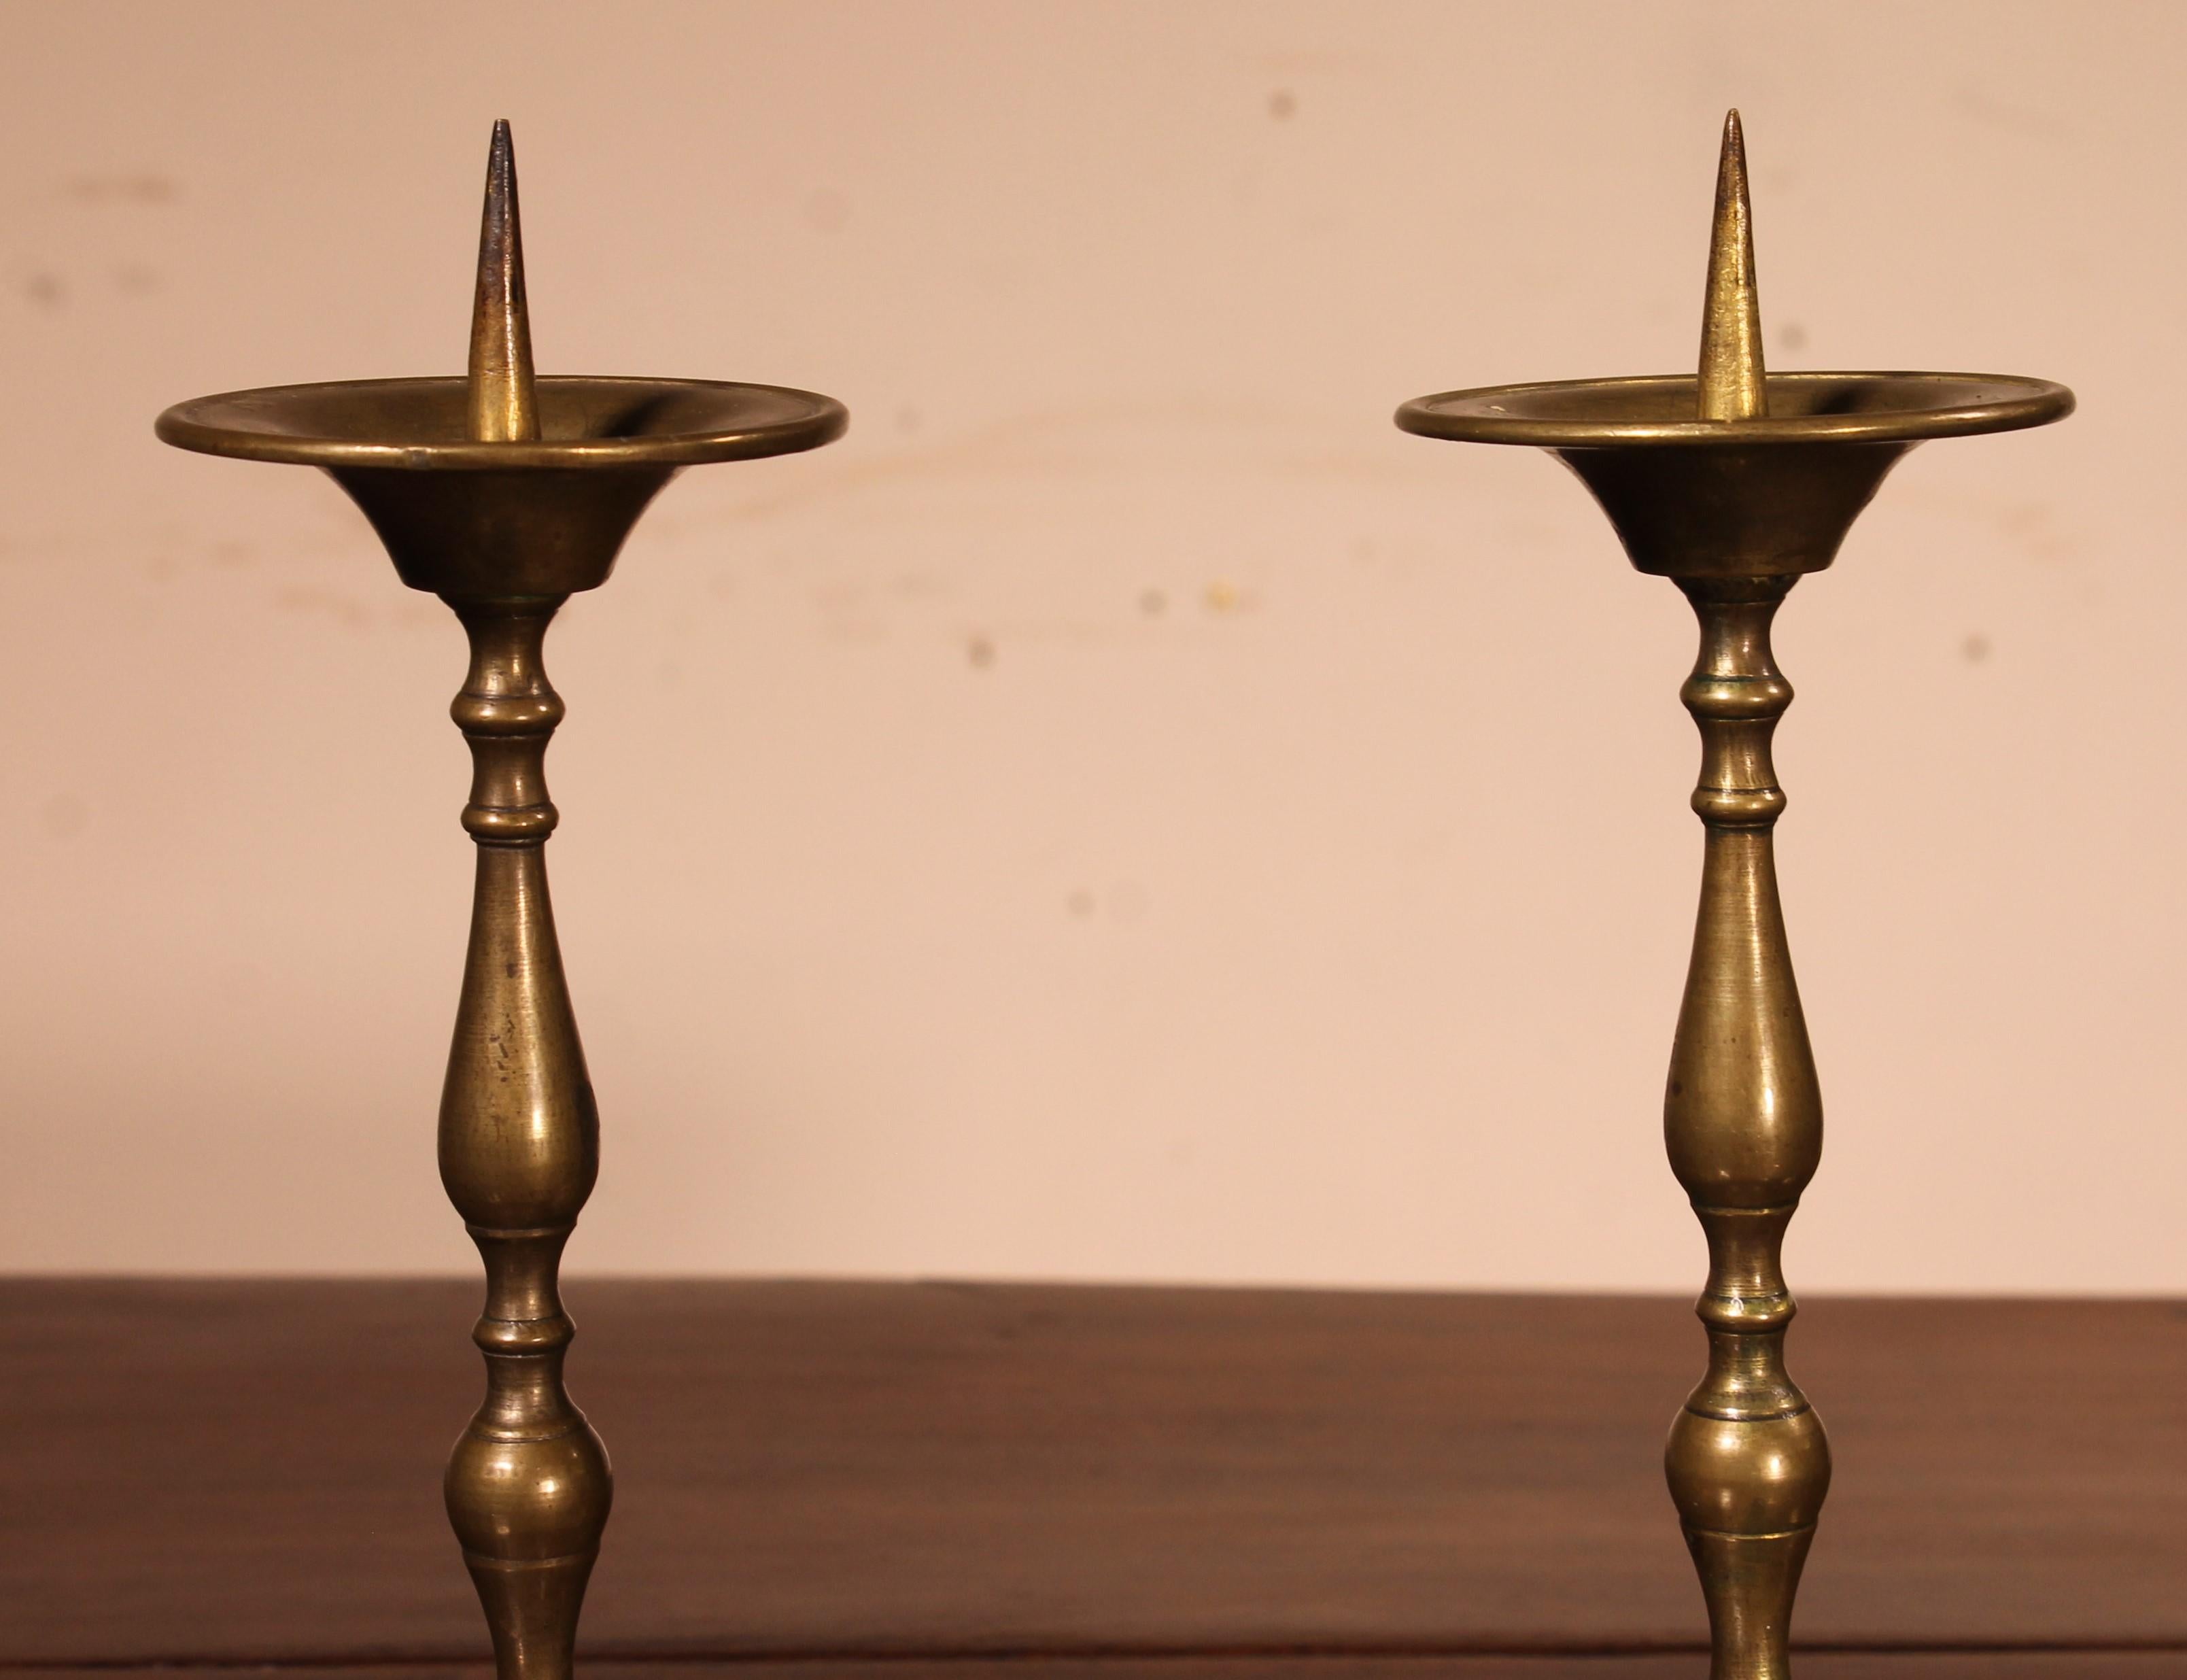 Ein charmantes Paar Kerzenhalter aus Bronze, die im 18. Jahrhundert in Frankreich hergestellt wurden.

ein Paar Kerzenständer, das klein ist, was ungewöhnlich und selten ist

. Hervorragende Patina und in ausgezeichnetem Zustand mit ihren Gewinden,